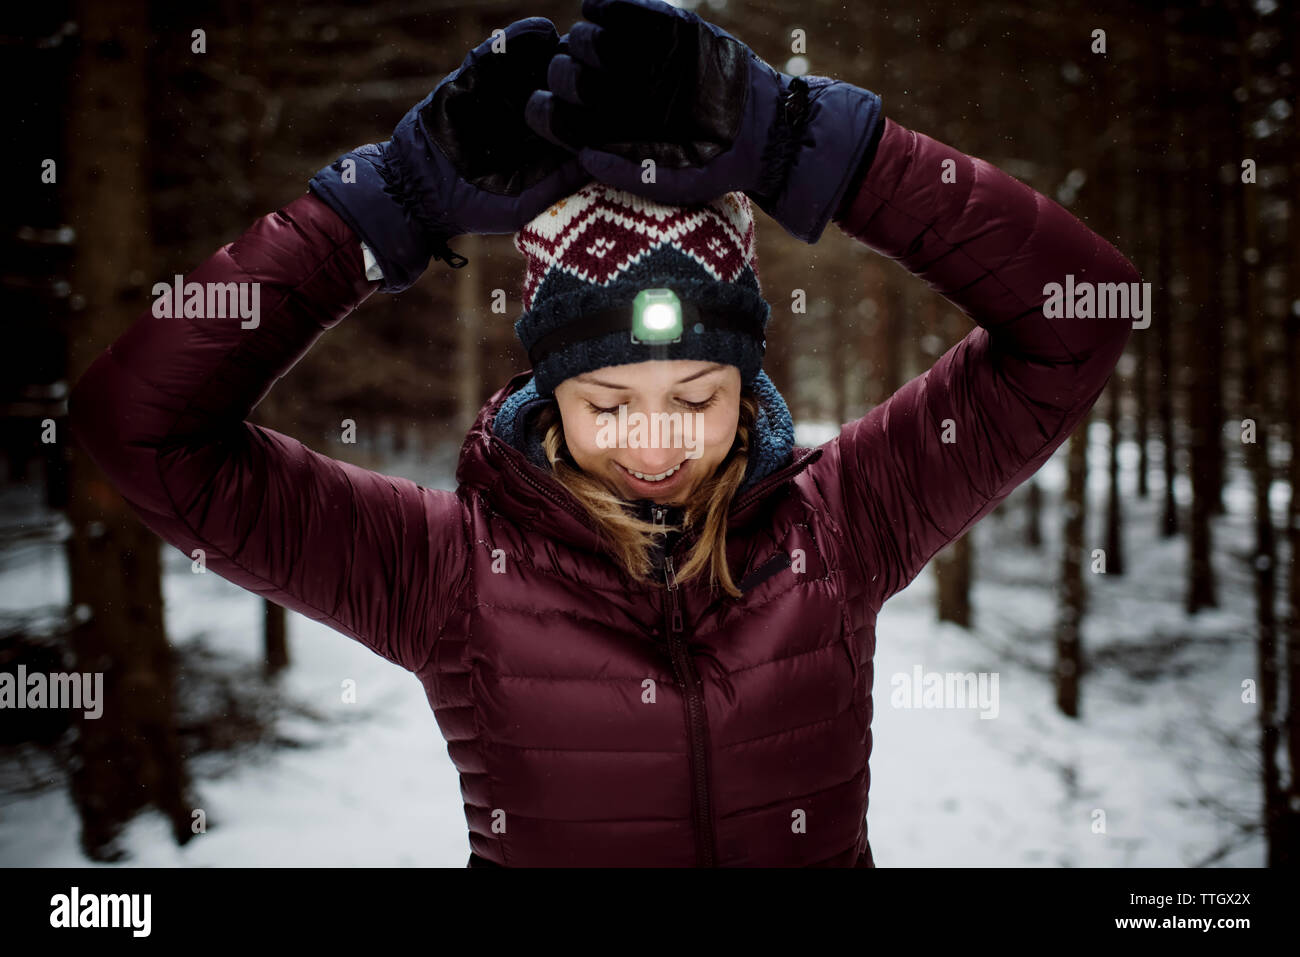 Woman smiling happy avec lampe frontale sur l'extérieur dans la forêt enneigée Banque D'Images